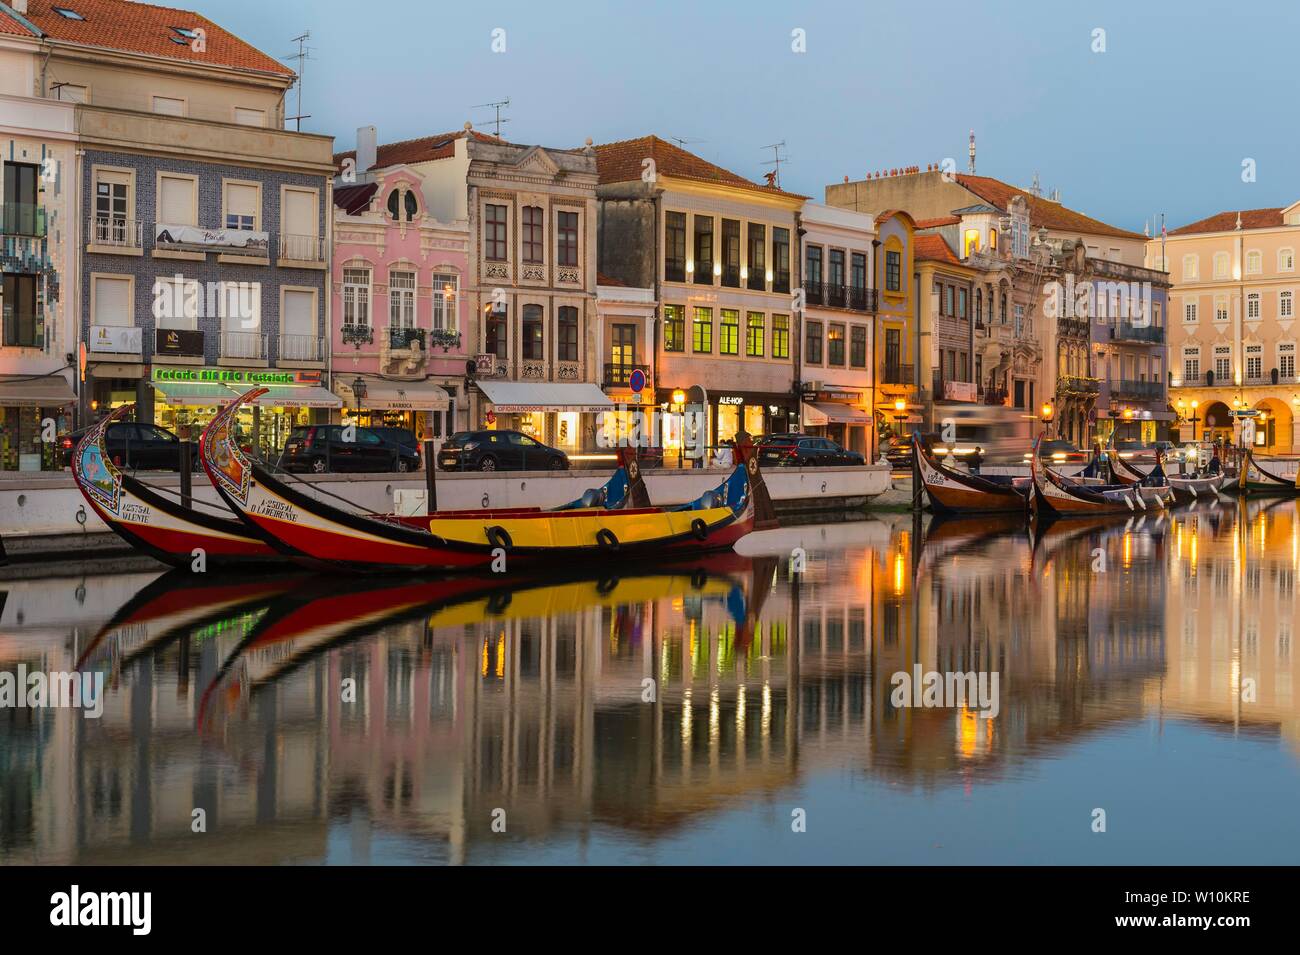 Amarrés le long de la principale moliceiros, Canal de Venise du Portugal, Aveiro, Beira Litoral, Portugal Banque D'Images